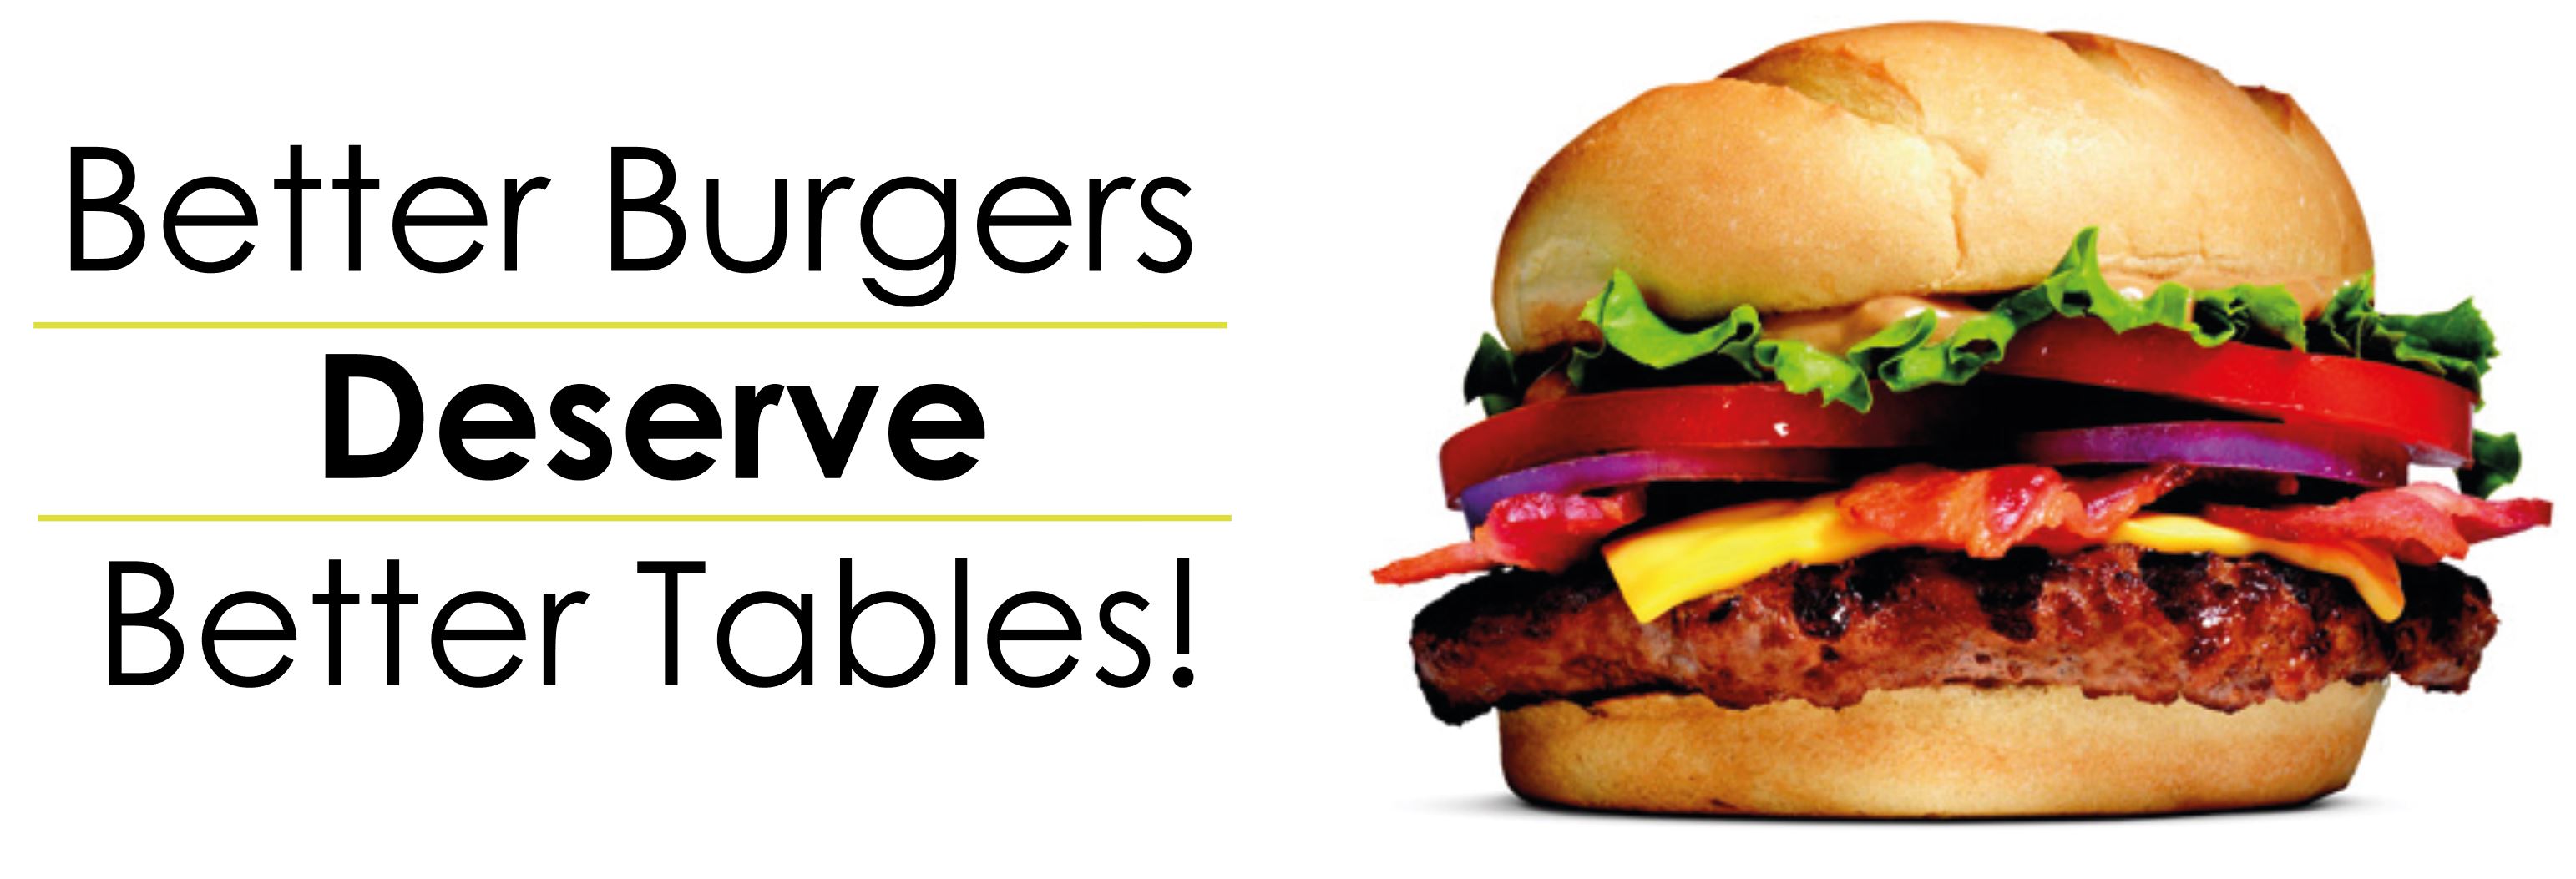 Better Burgers Deserve Better Tables - Get FLAT!